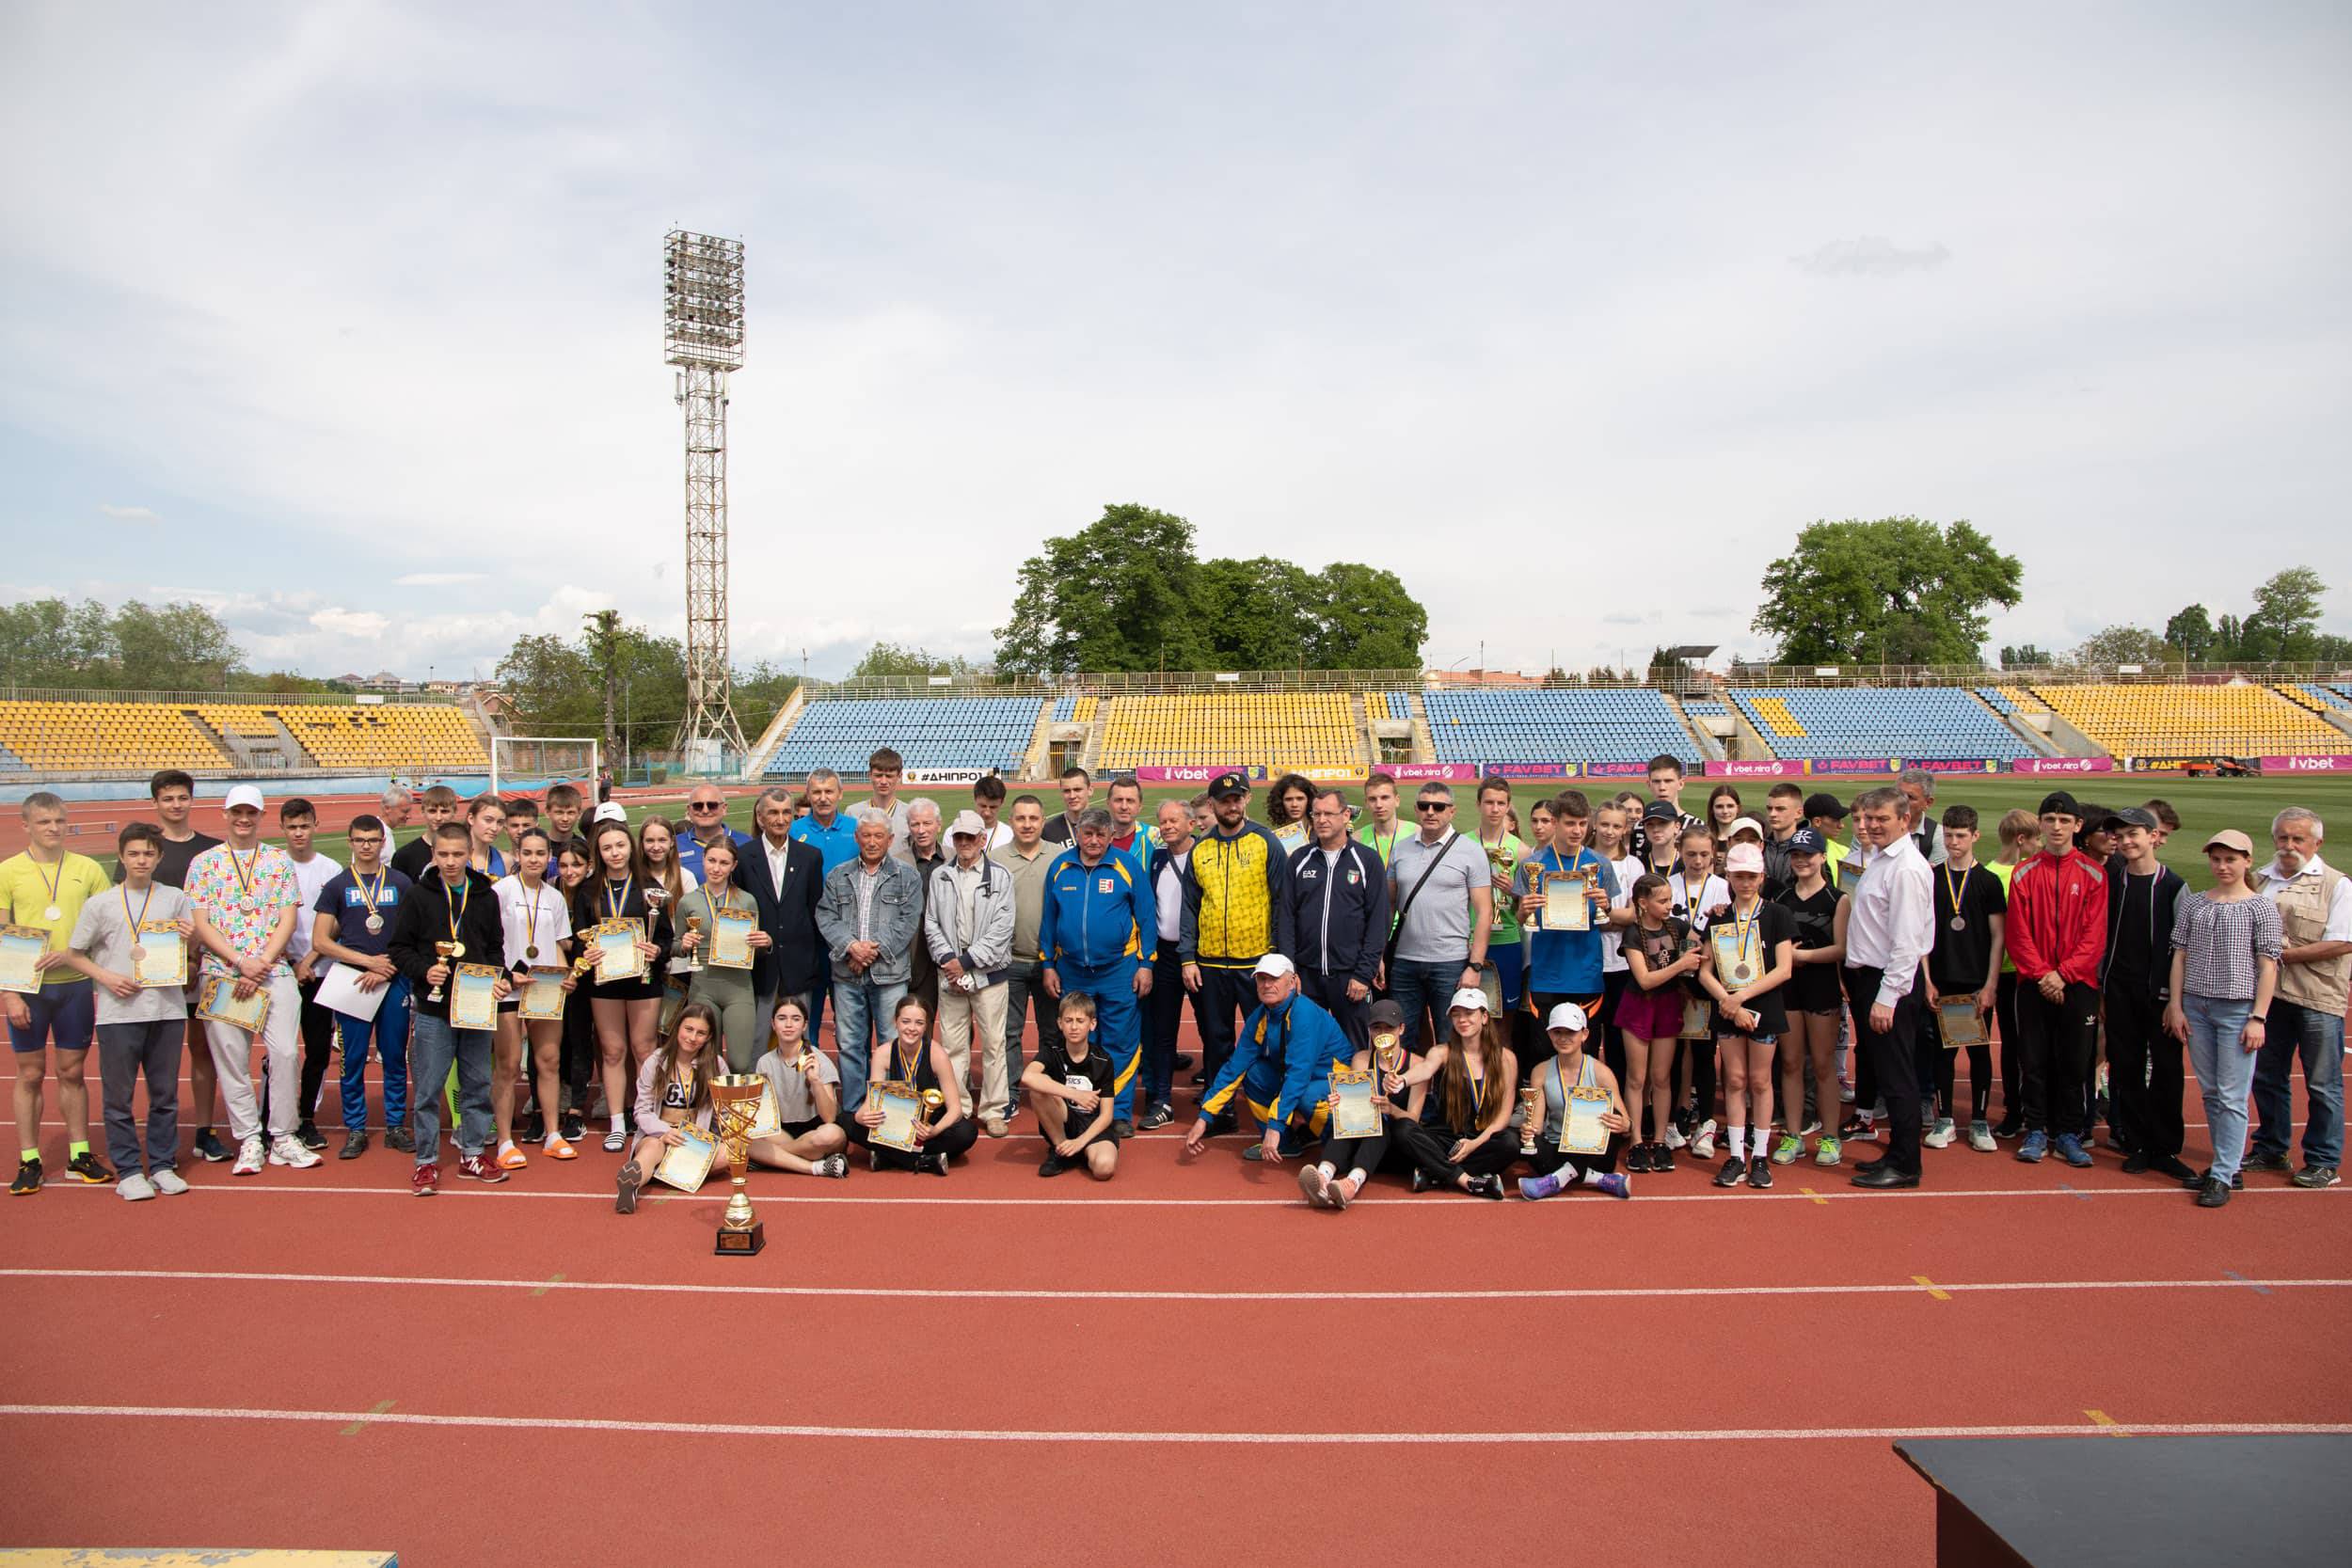 Ювілейний, 60-й Кубок «Дружба» відбувся сьогодні на ужгородському стадіоні «Авангард»